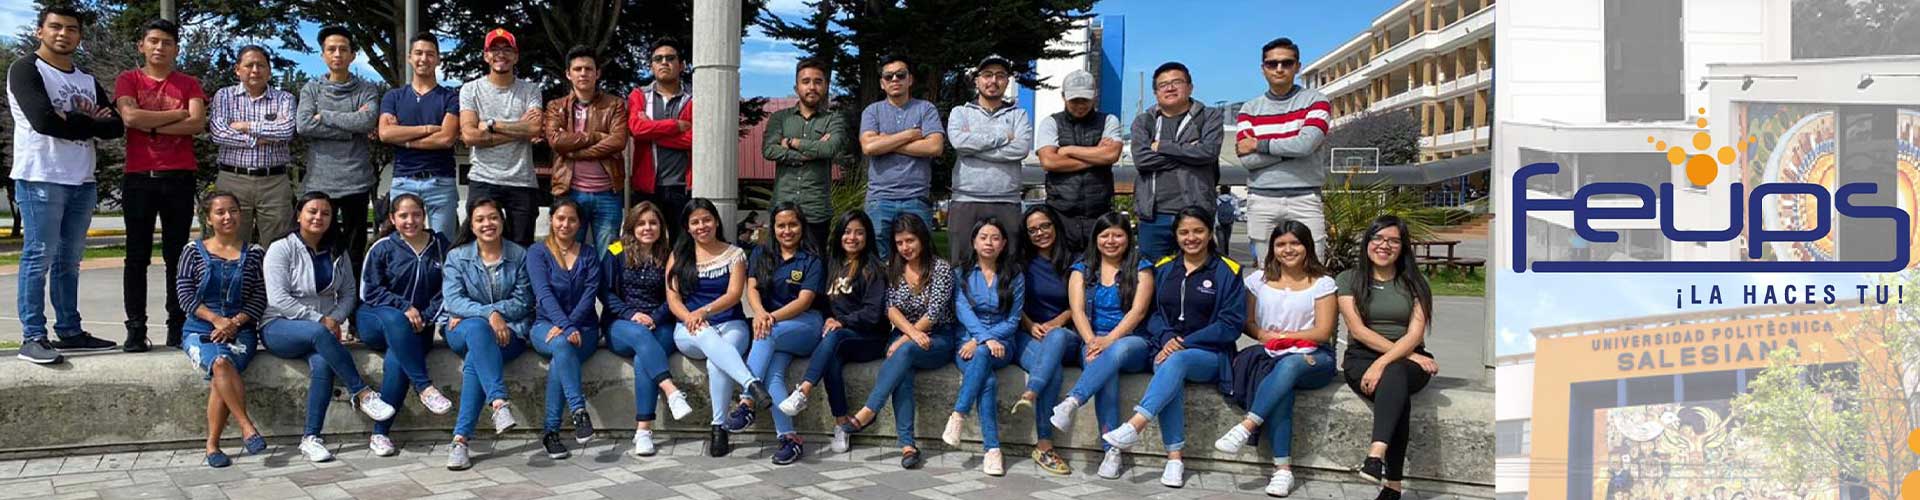 Integrantes de la Federación de Estudiantes de la Universidad Politécnica Salesiana